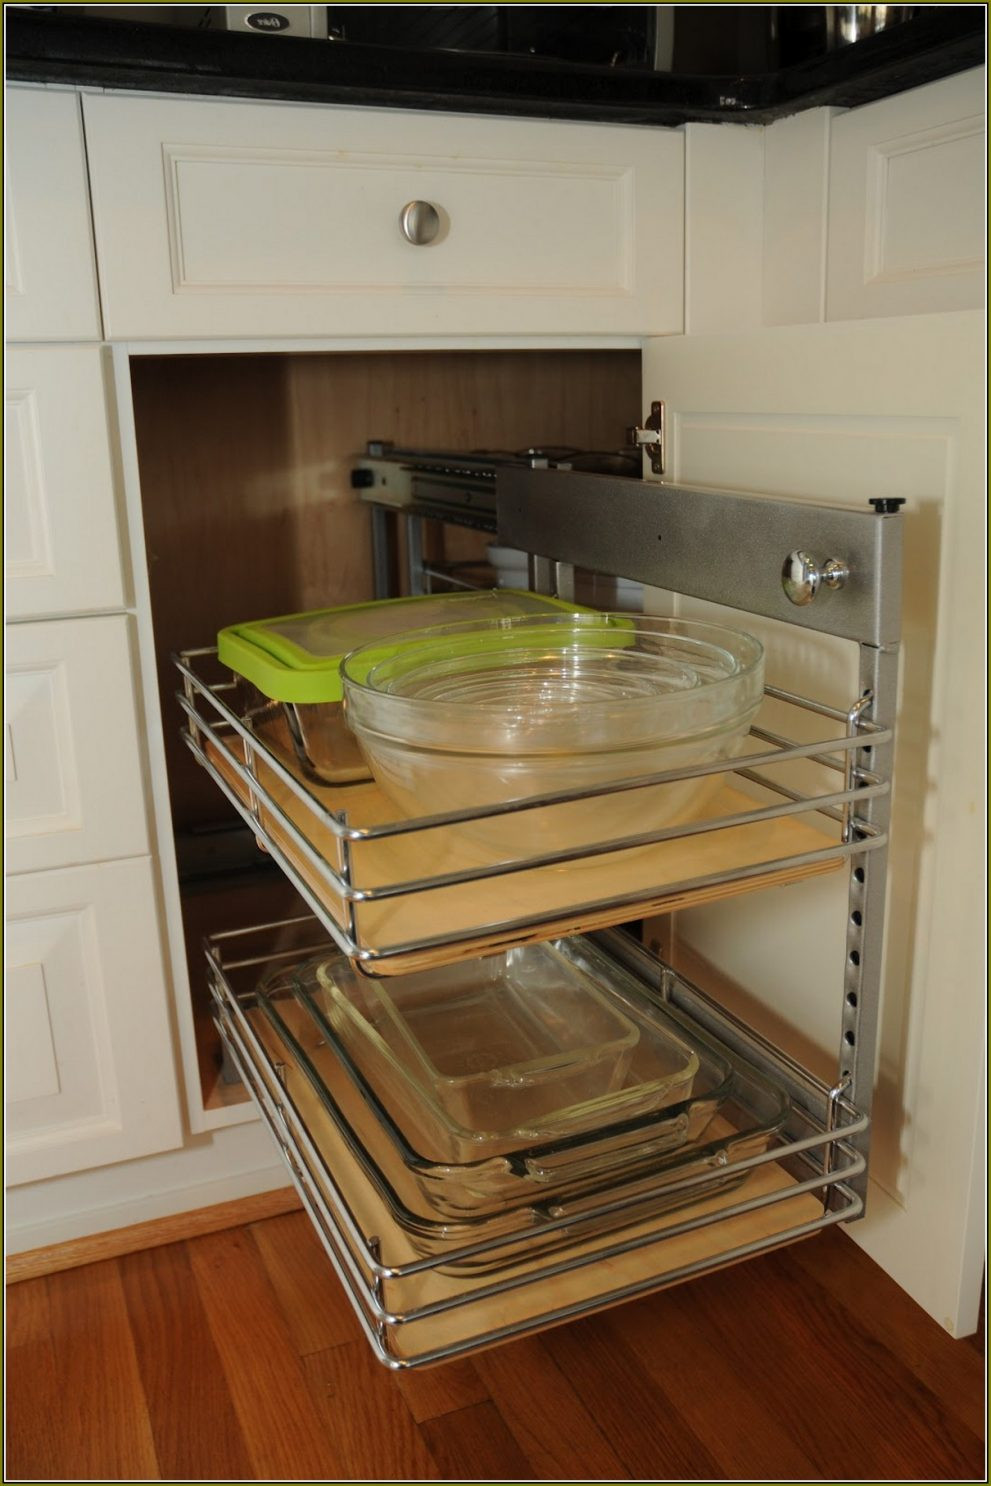 Best ideas about Blind Corner Kitchen Cabinet Organizers
. Save or Pin Blind Corner Kitchen Cabinet Ideas – Cabinets Matttroy Now.